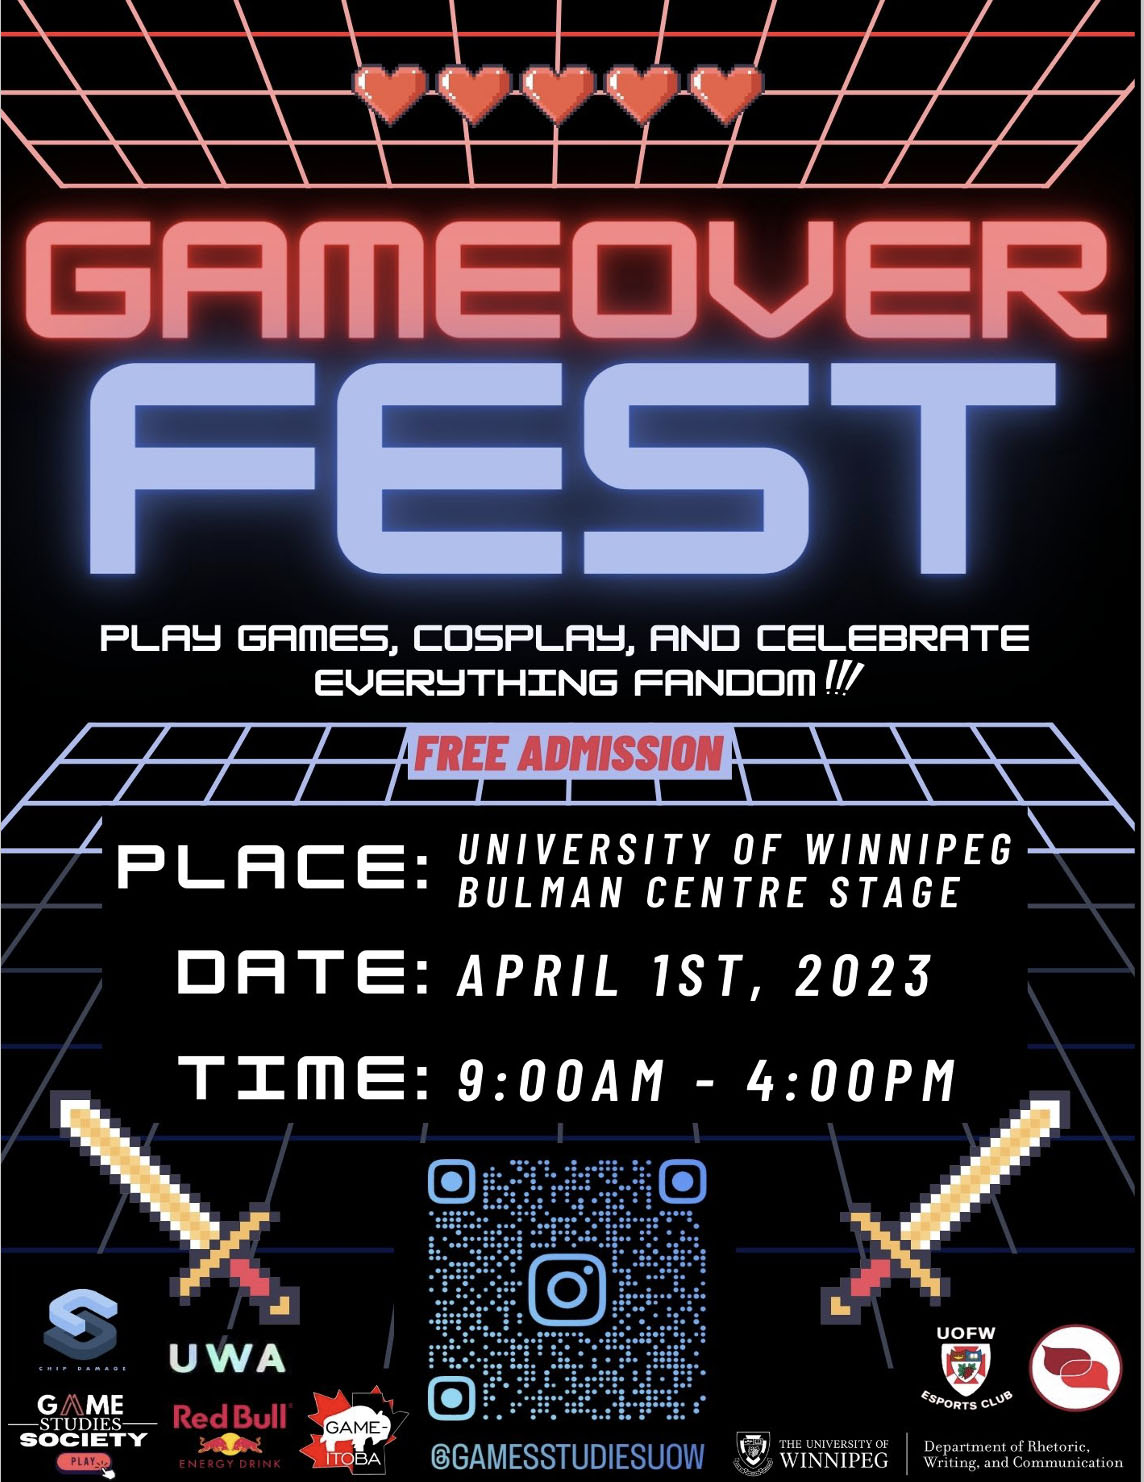 GameOver Fest